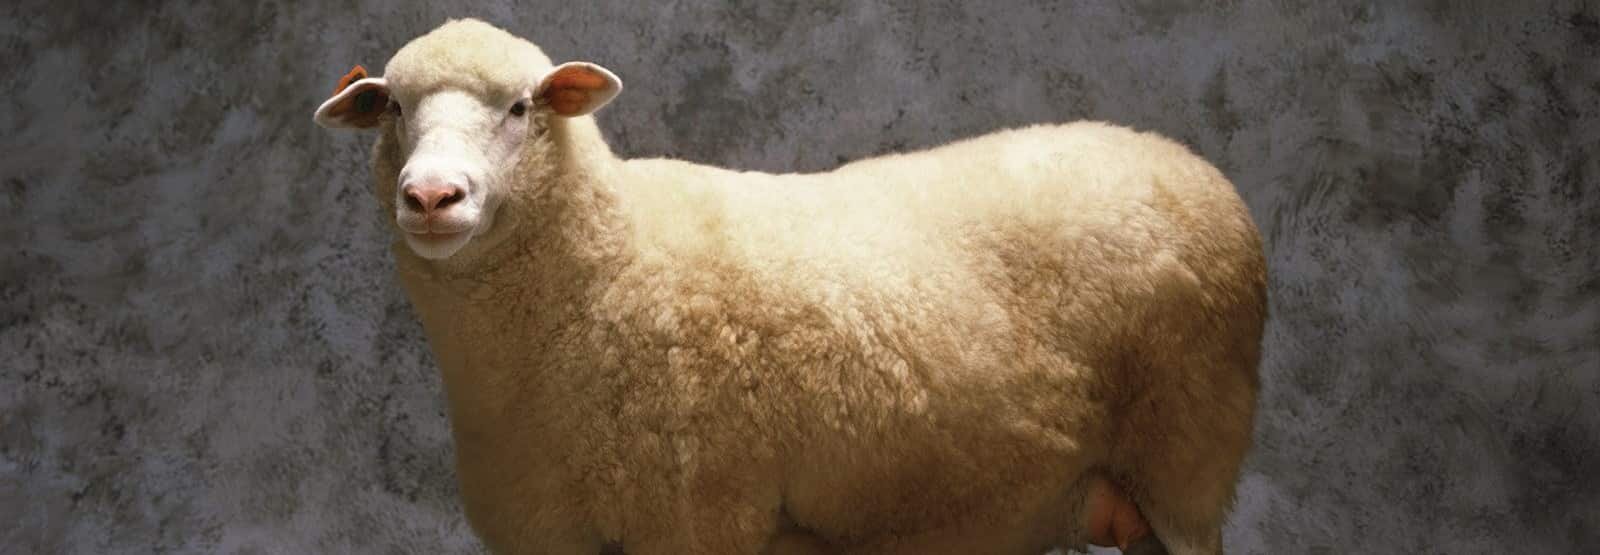 100% Lambs Wool Mattress Pads